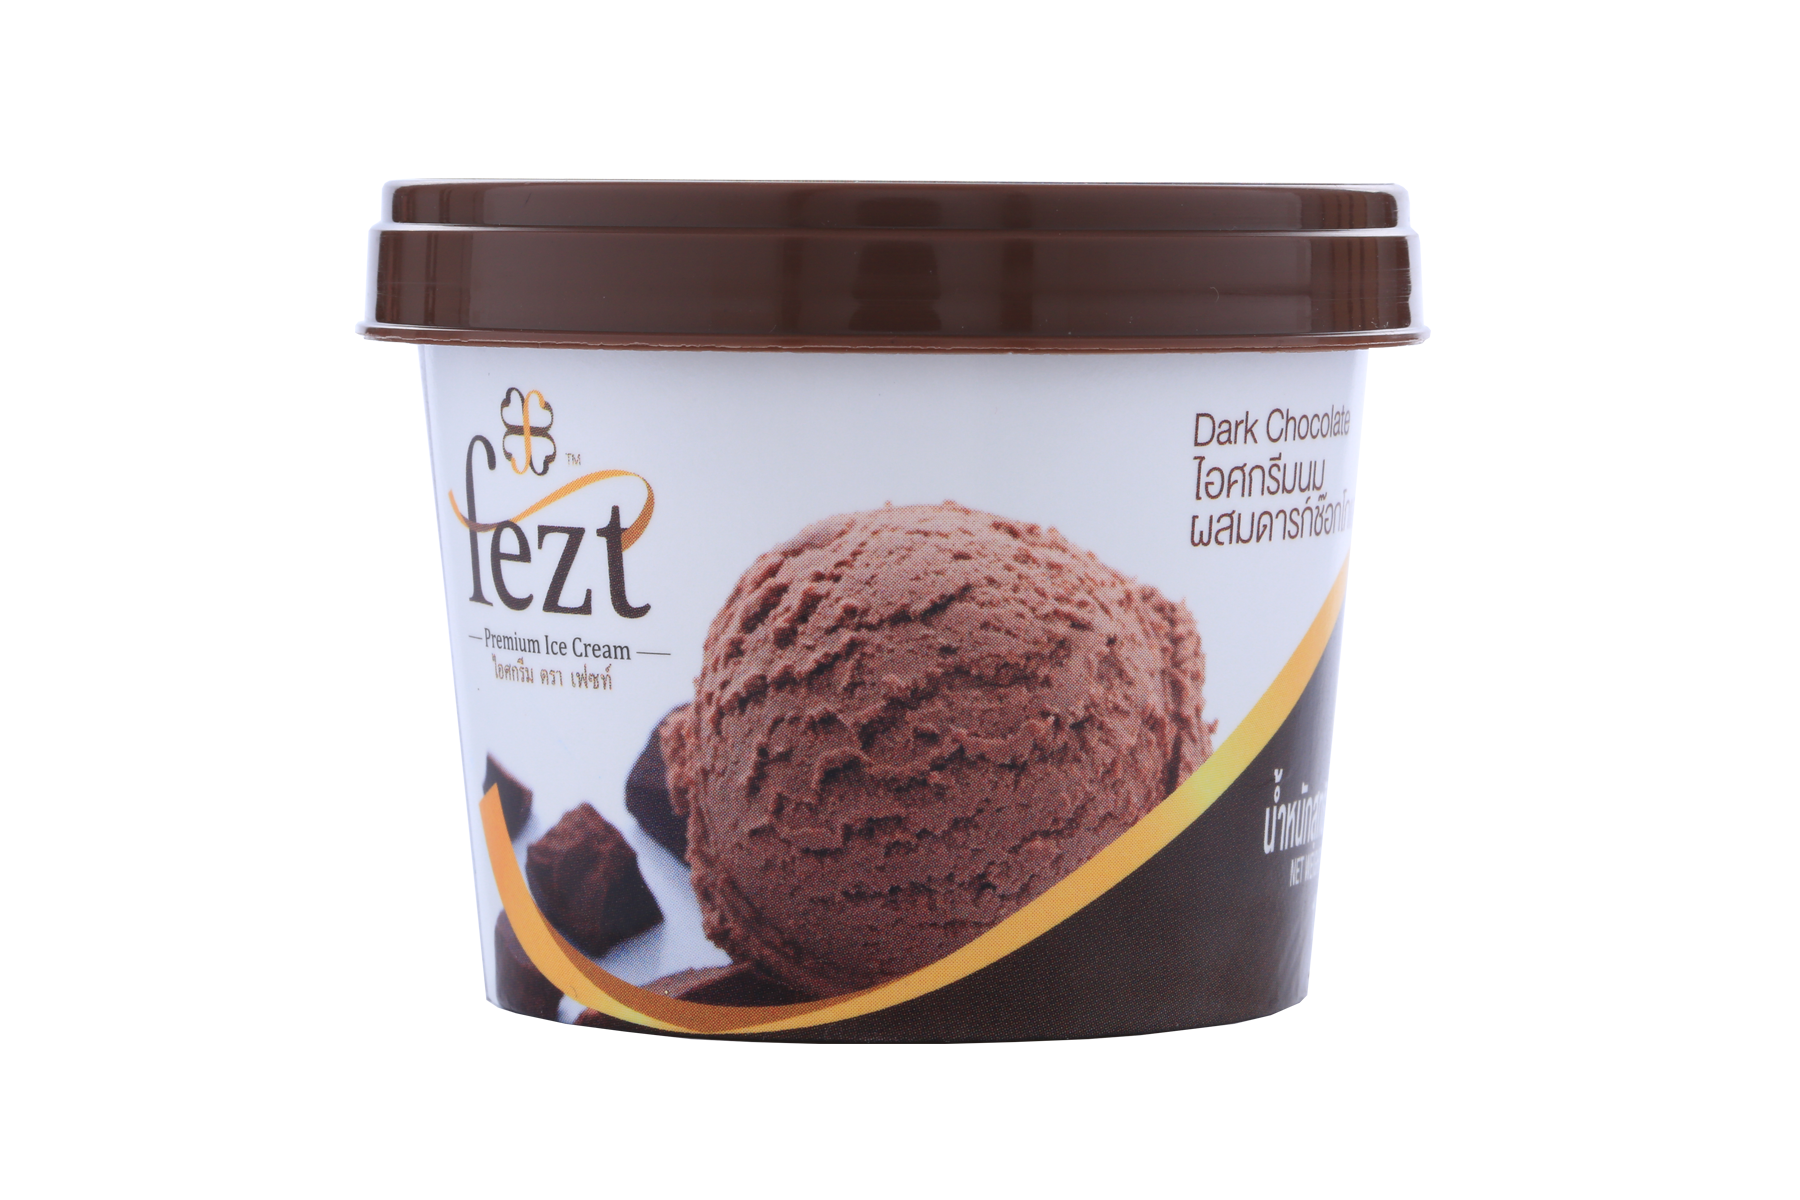 Fezt ไอศกรีมพรีเมี่ยม  รสดาร์คช็อคโกแลต แบบถ้วย 75 กรัม แพ็คละ 12 ถ้วย